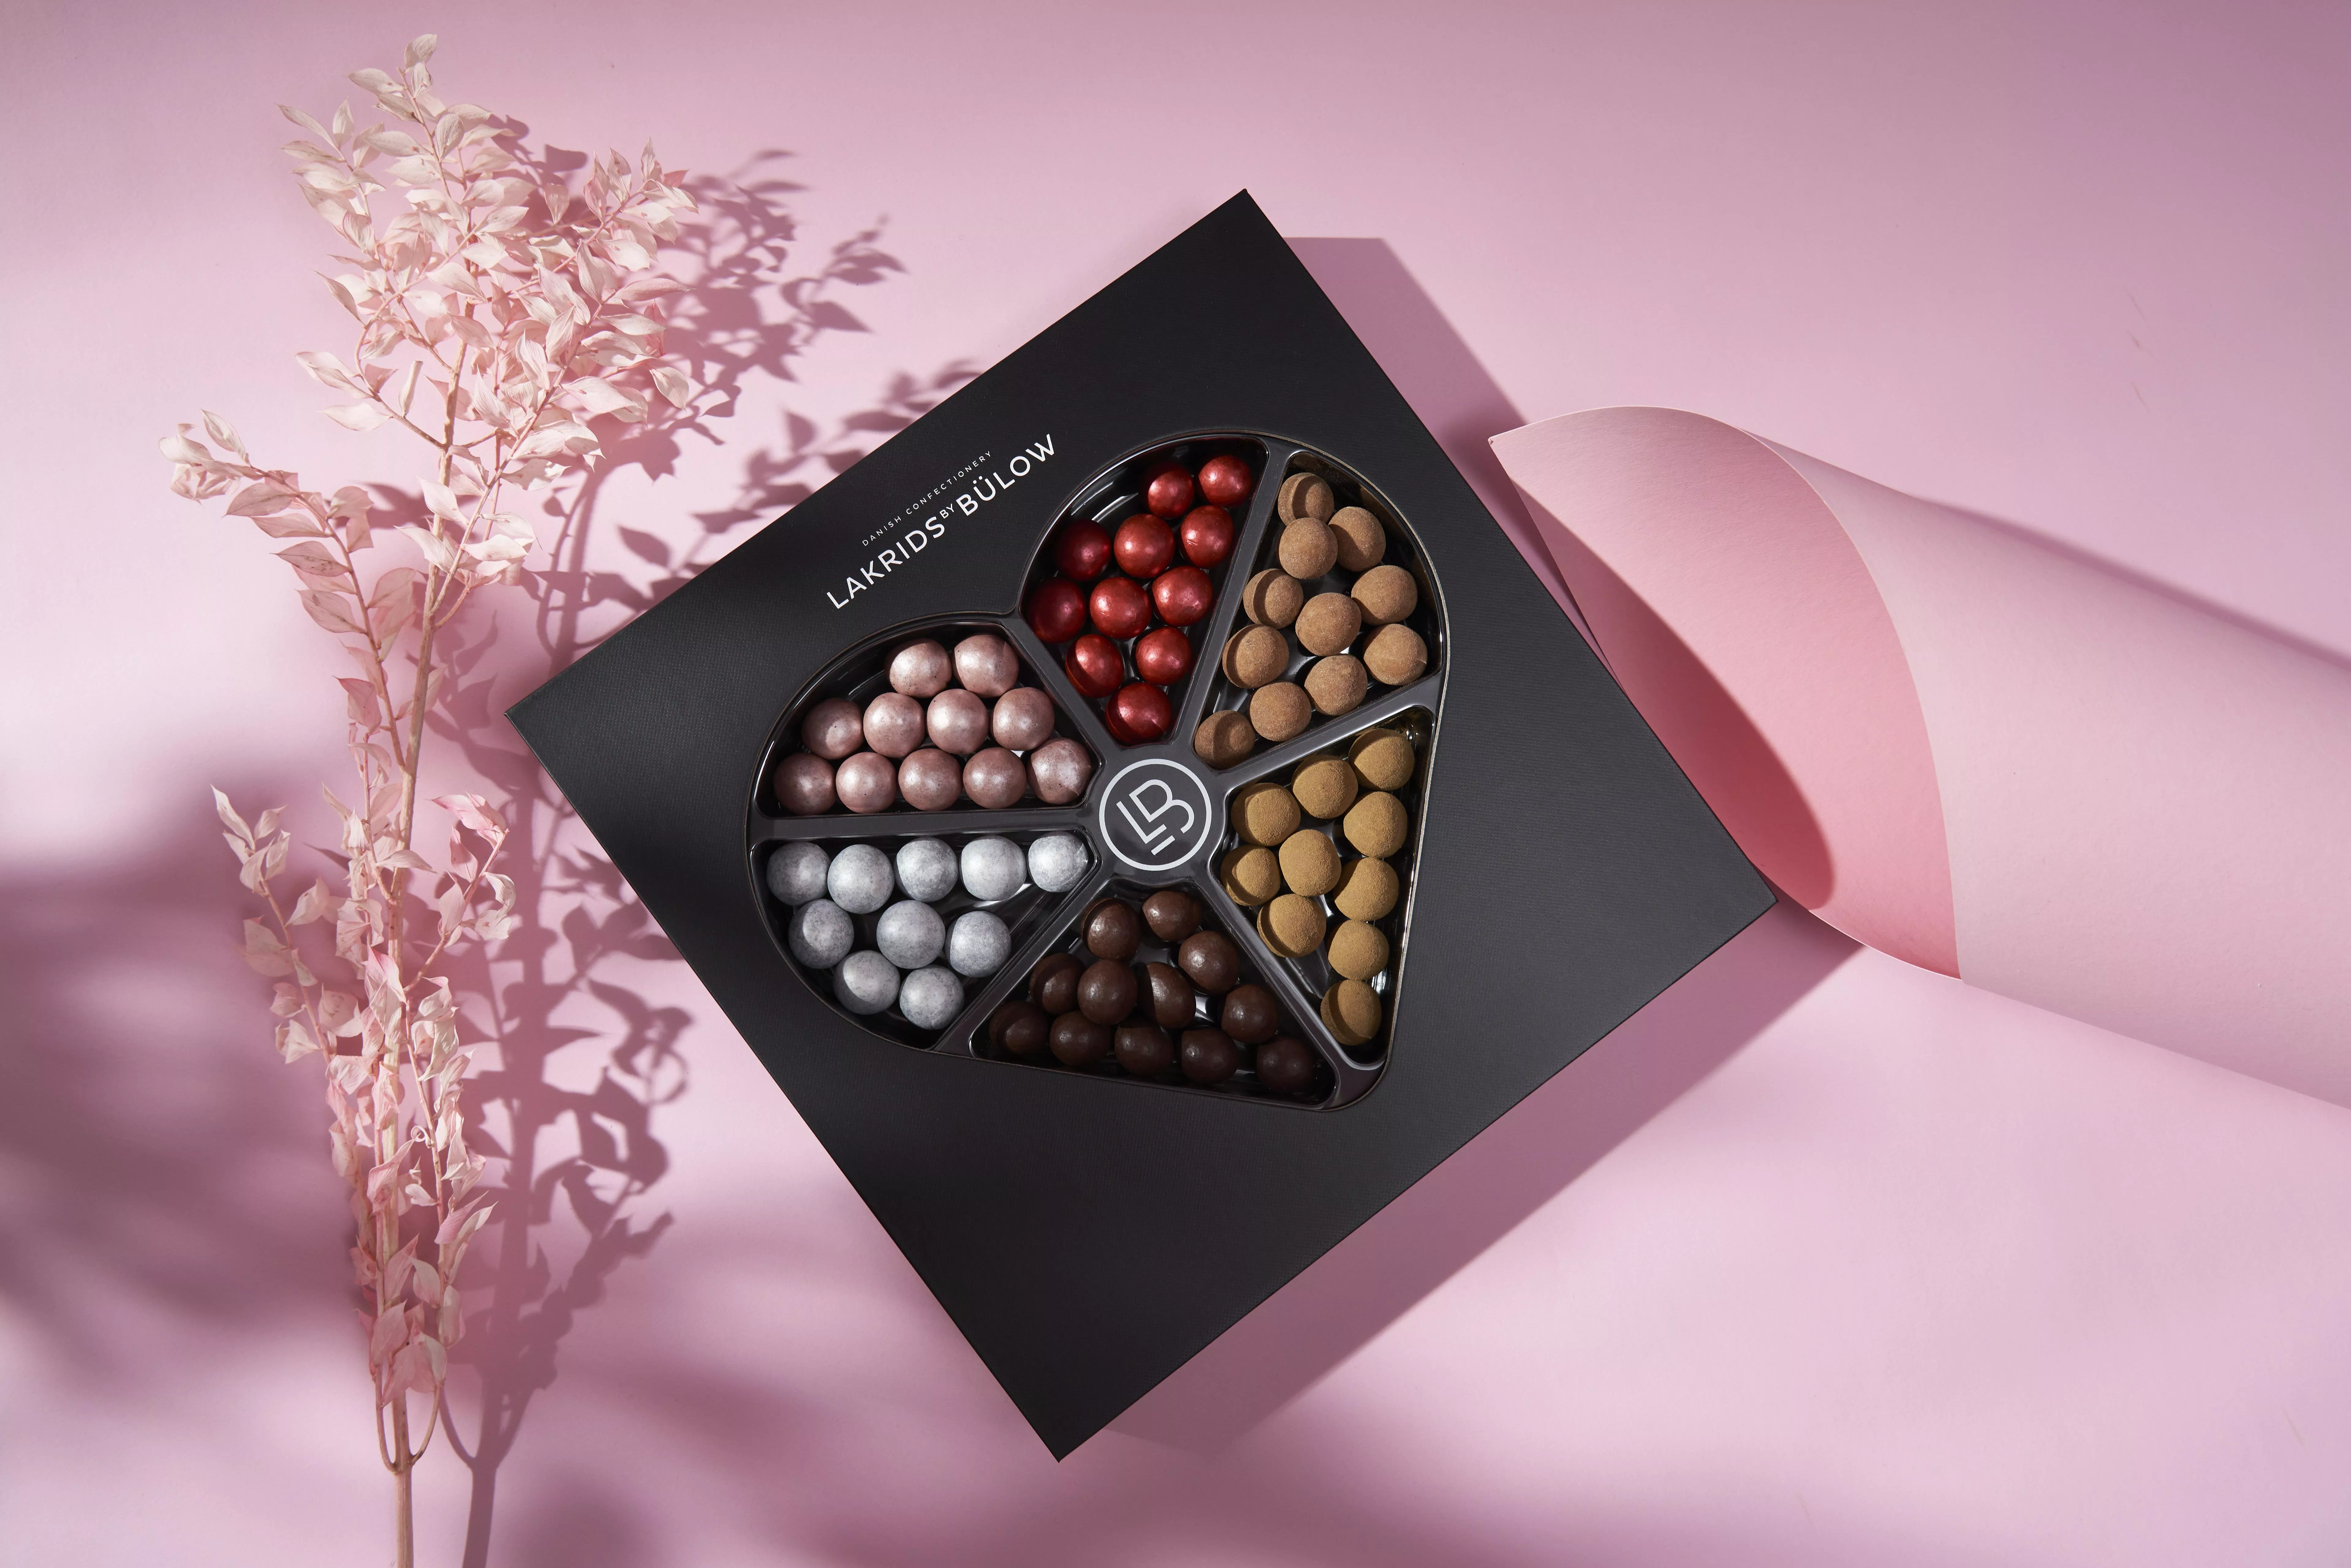 افكار علب شوكولا وحلوى، يمكنكِ تقديمها كهدية في رمضان 2021